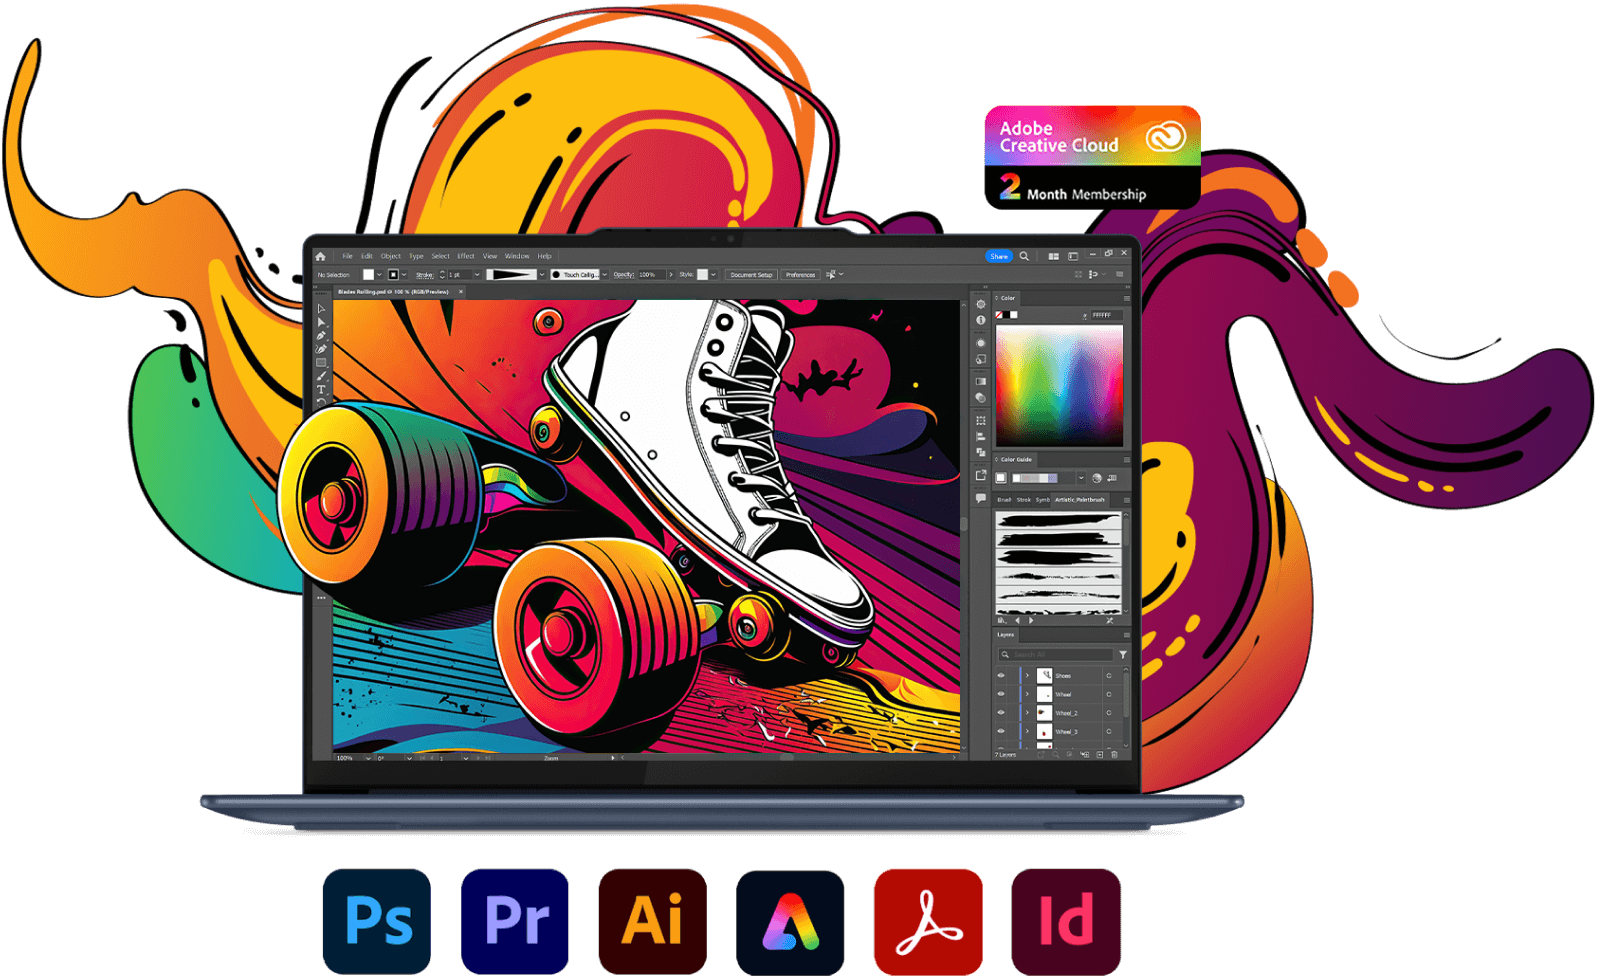 Фронтальне зображення ноутбука Lenovo Yoga з Photoshop на екрані та різноманітними іконками програм Adobe Creative Cloud.